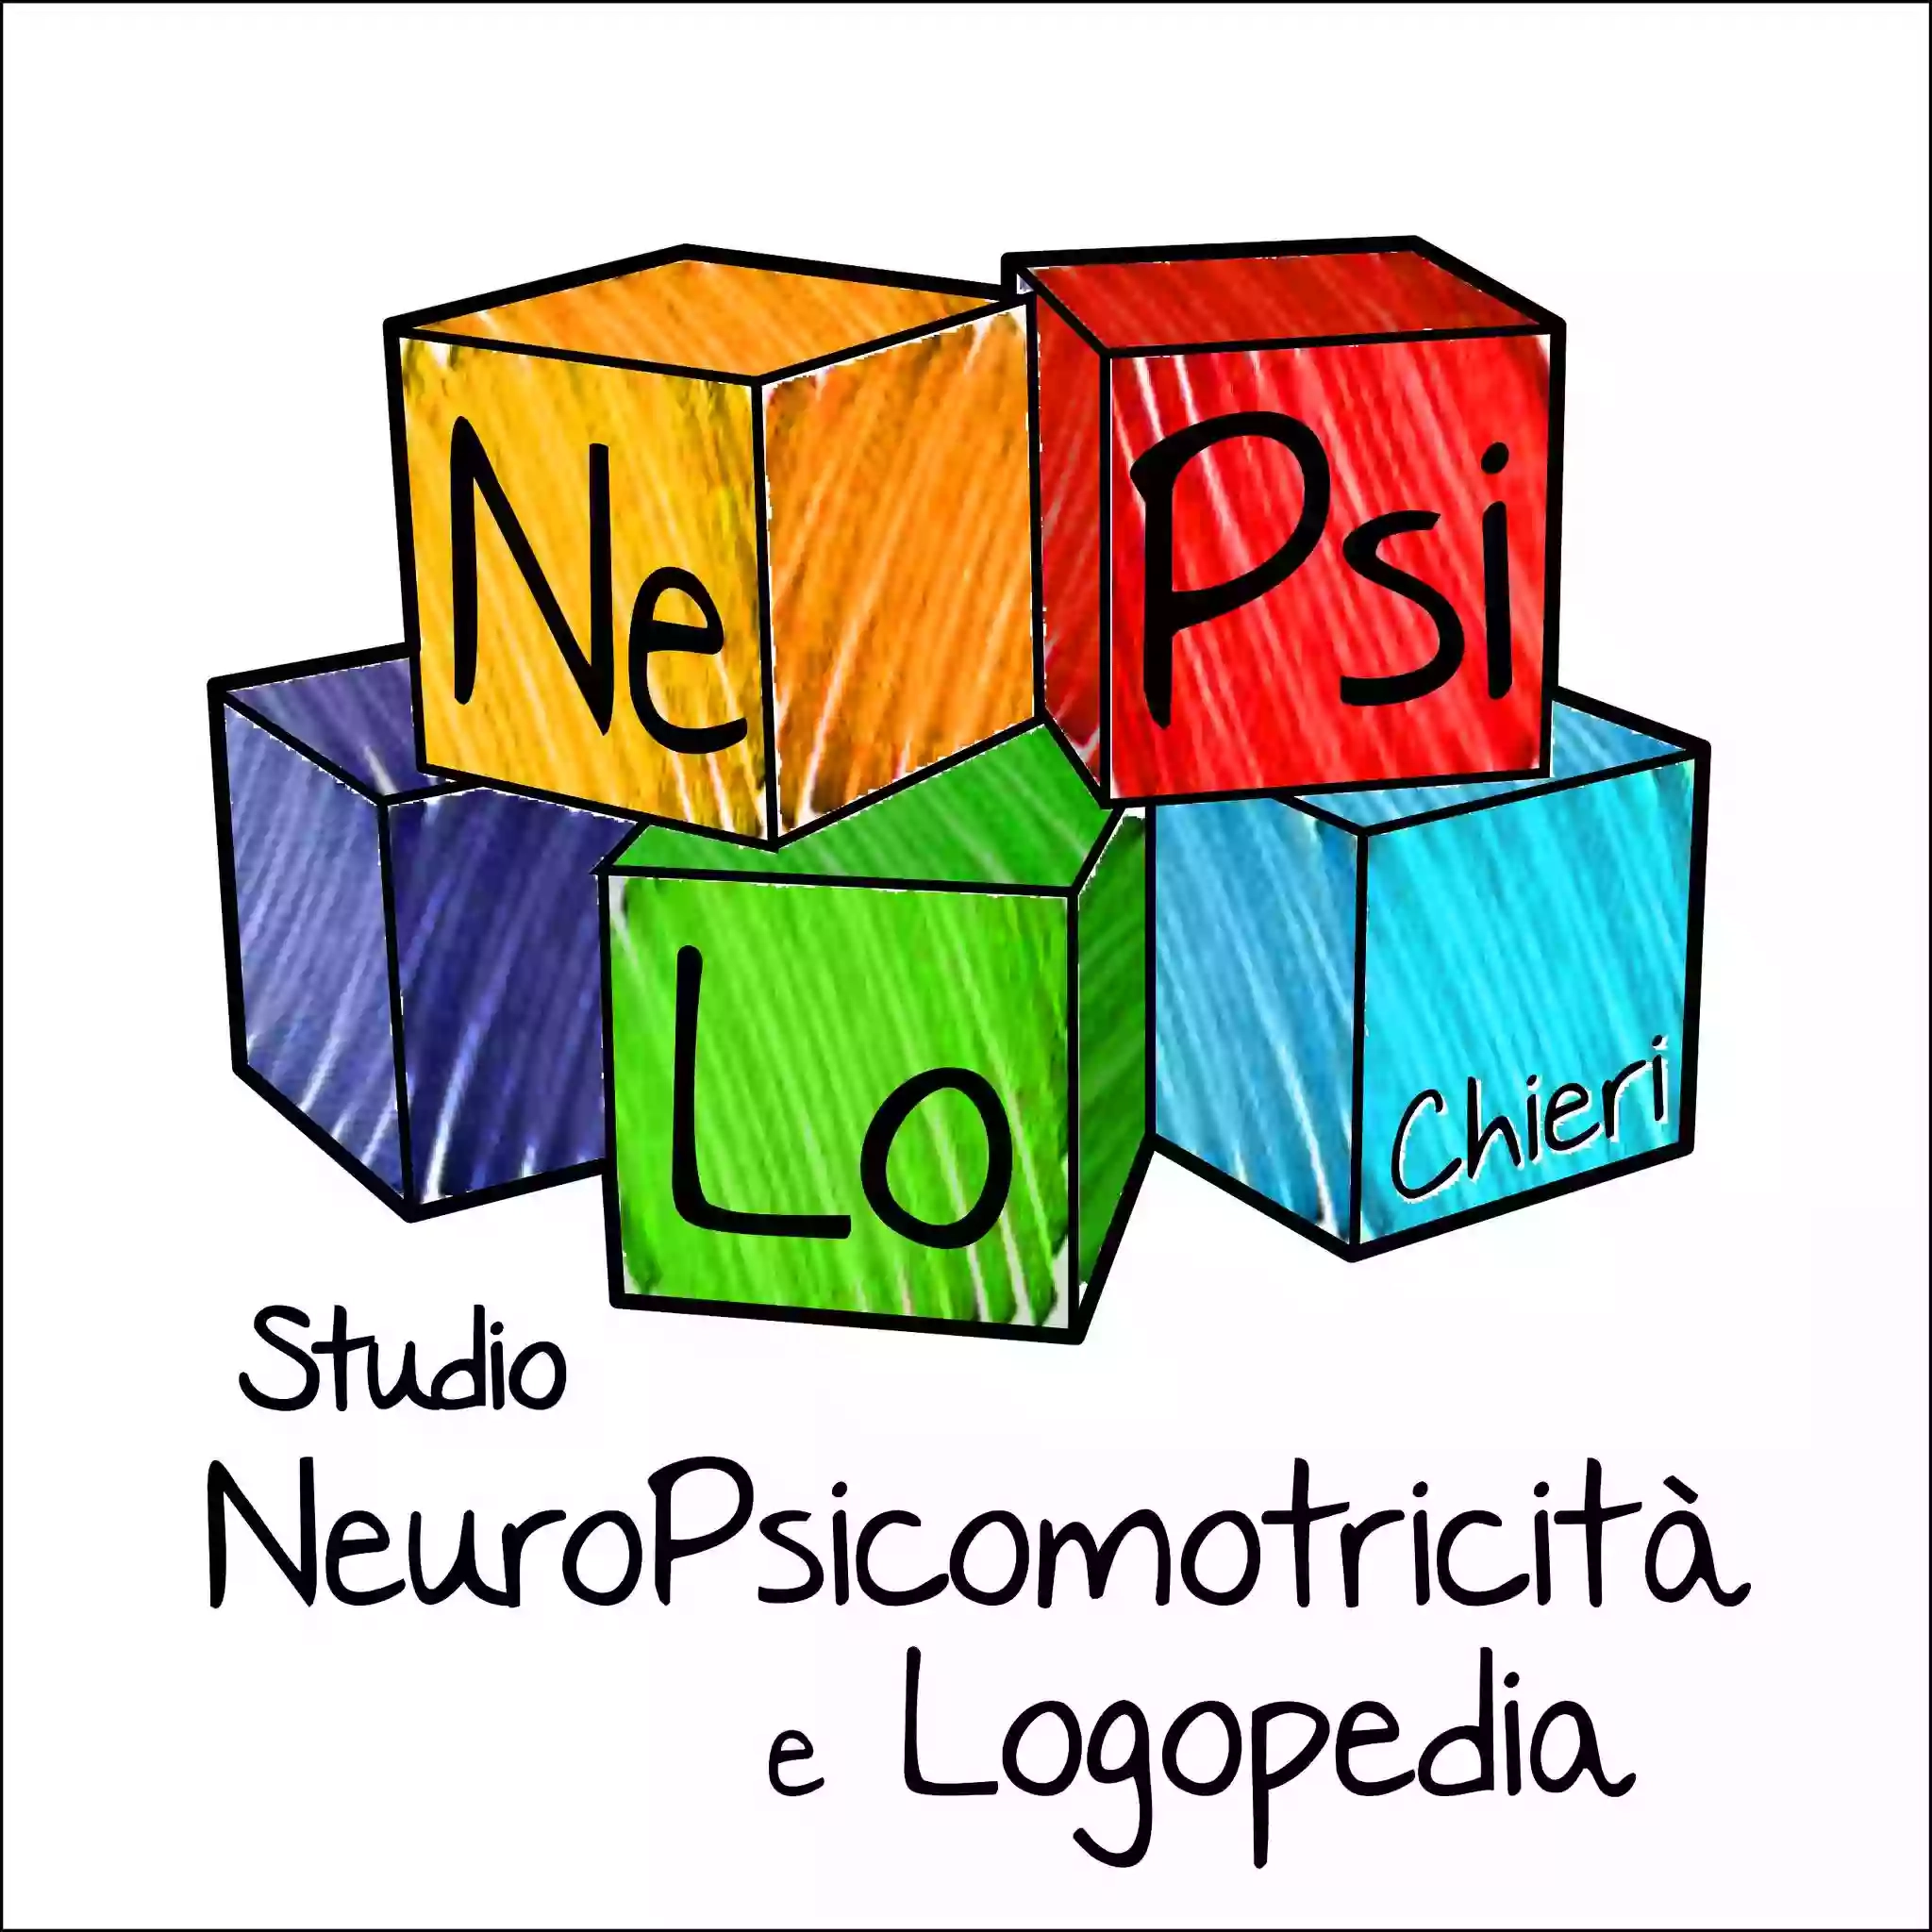 NePsiLo Studio di Neuropsicomotricità, Psicologia e Logopedia